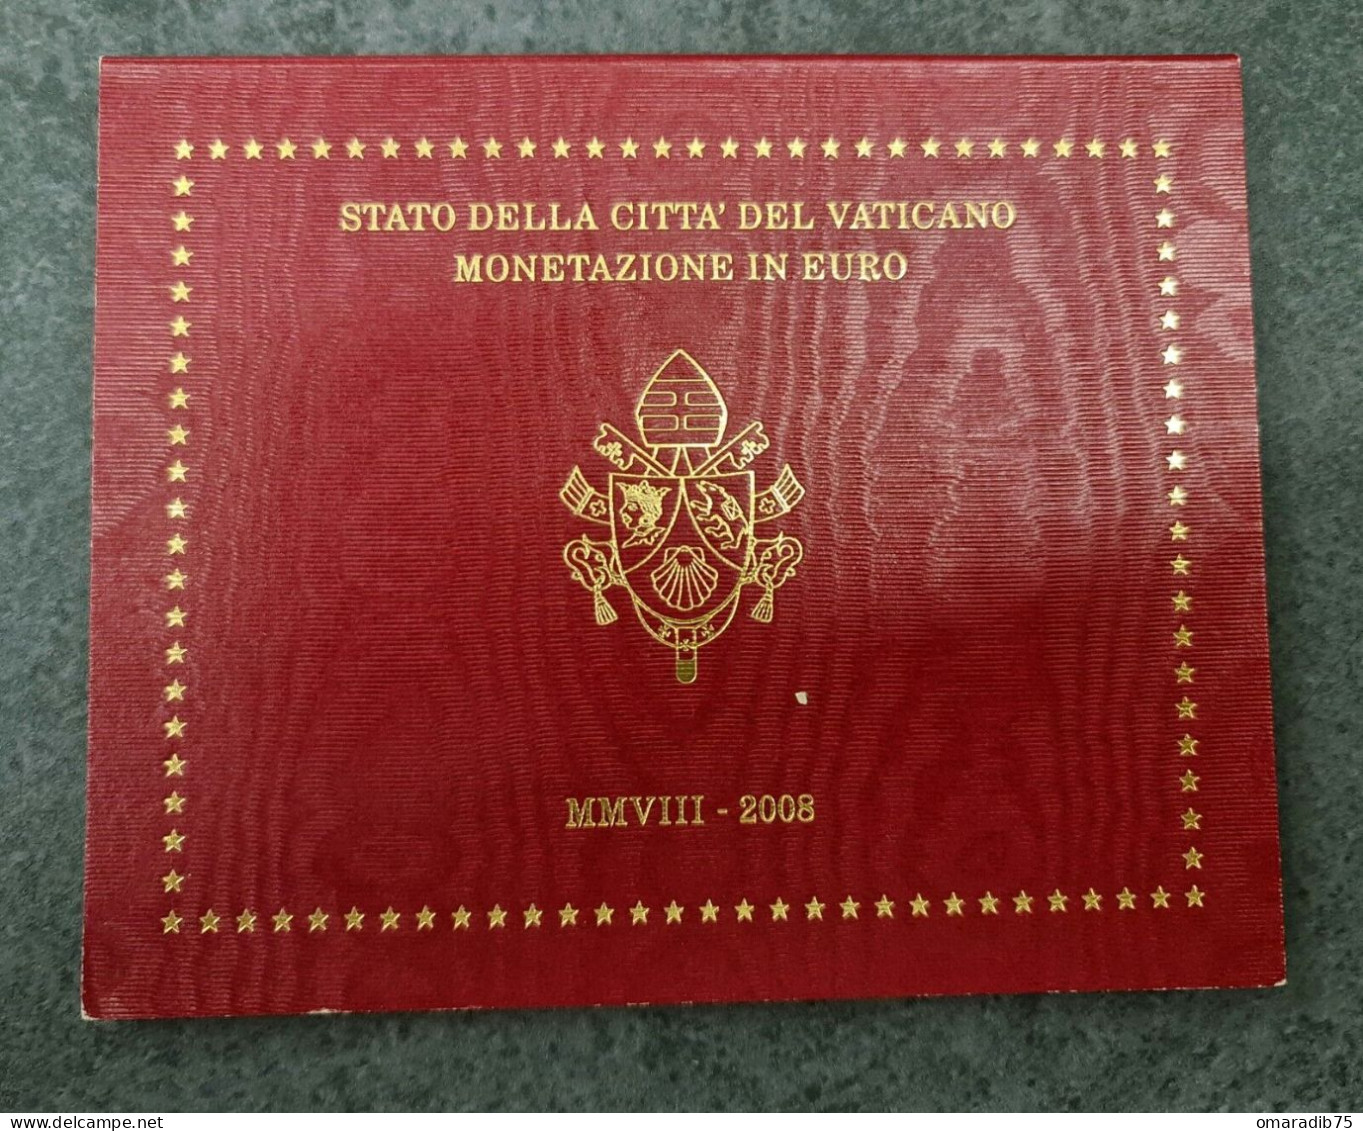 VATICAN Coffret Euros Vatican 2012 BE PROOF FDC - Vaticano